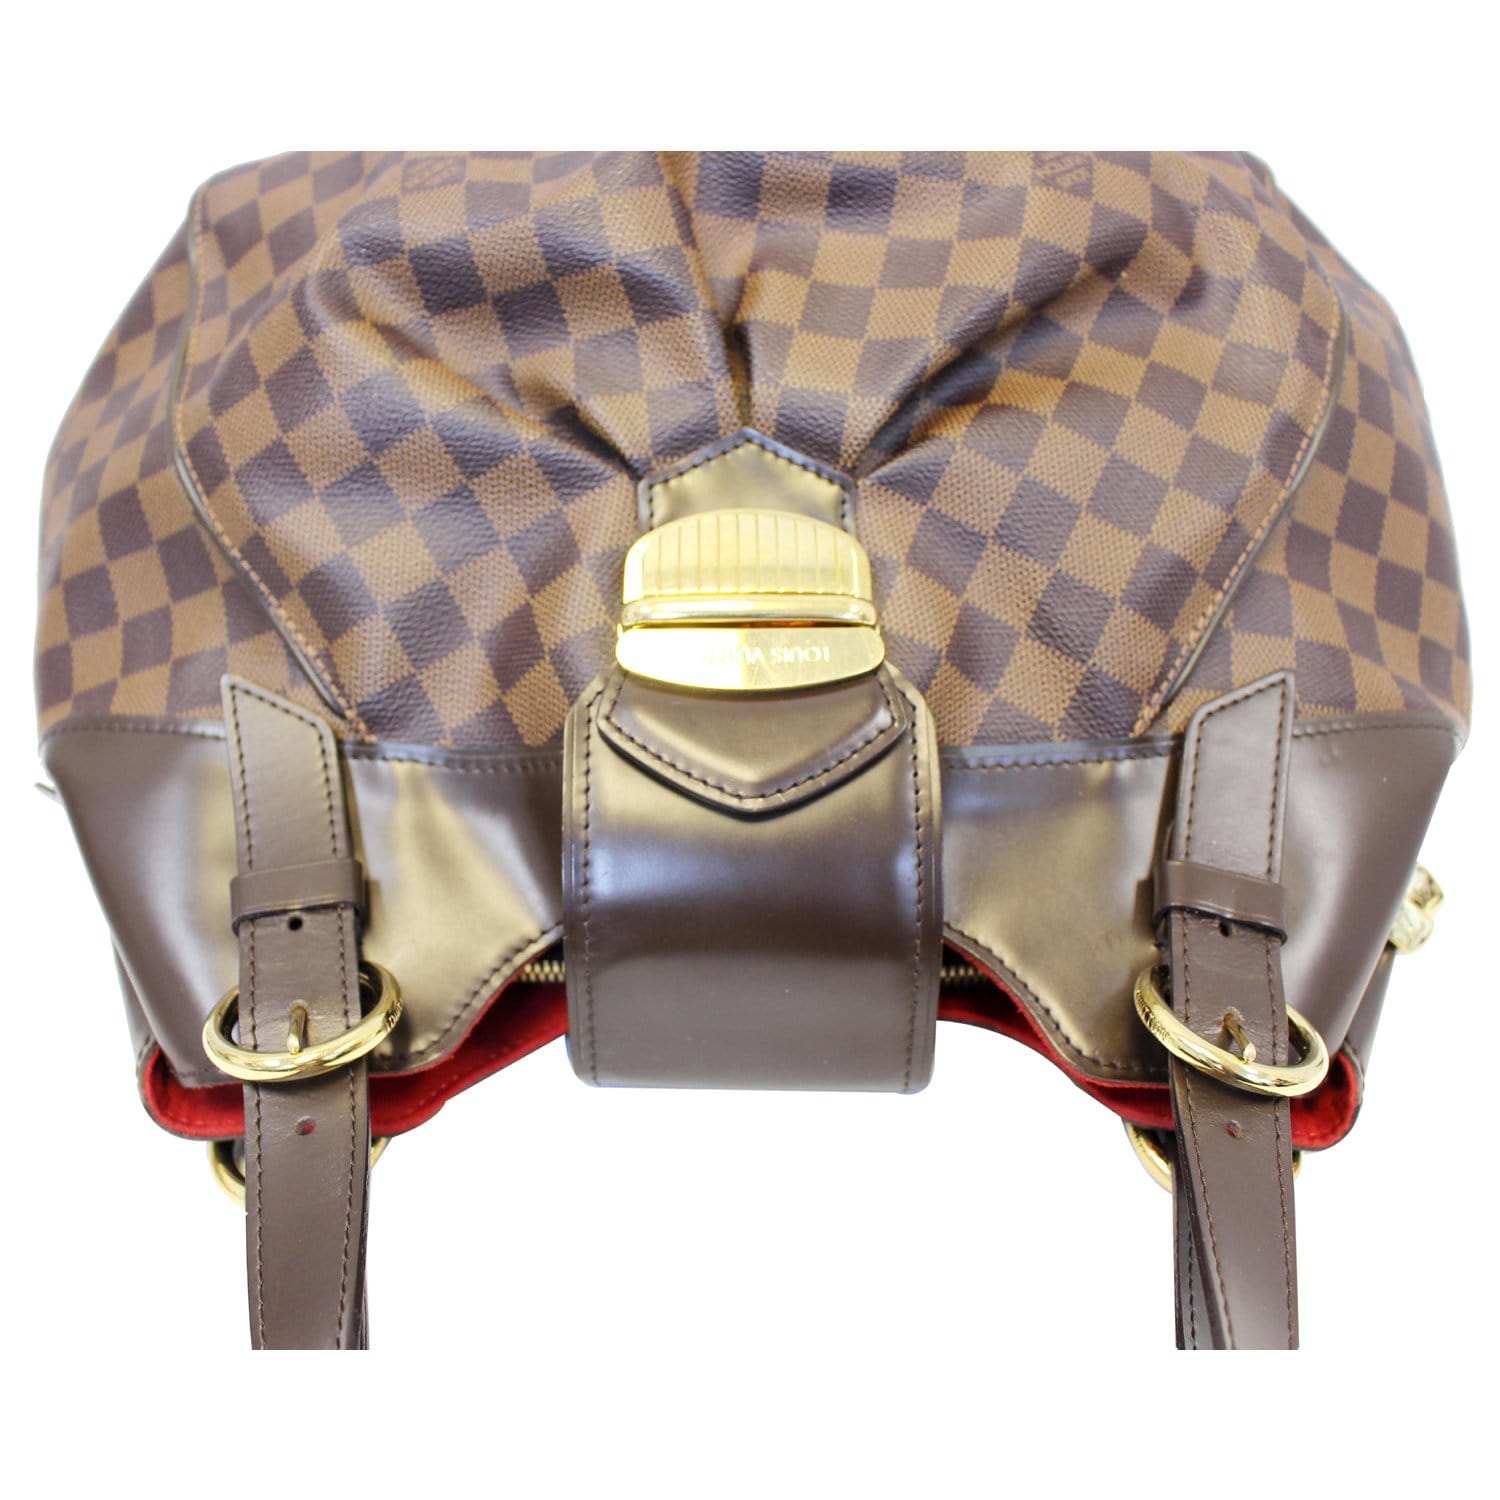 Authentic Louis Vuitton Damier Sistina GM Shoulder hand Bag CA2151